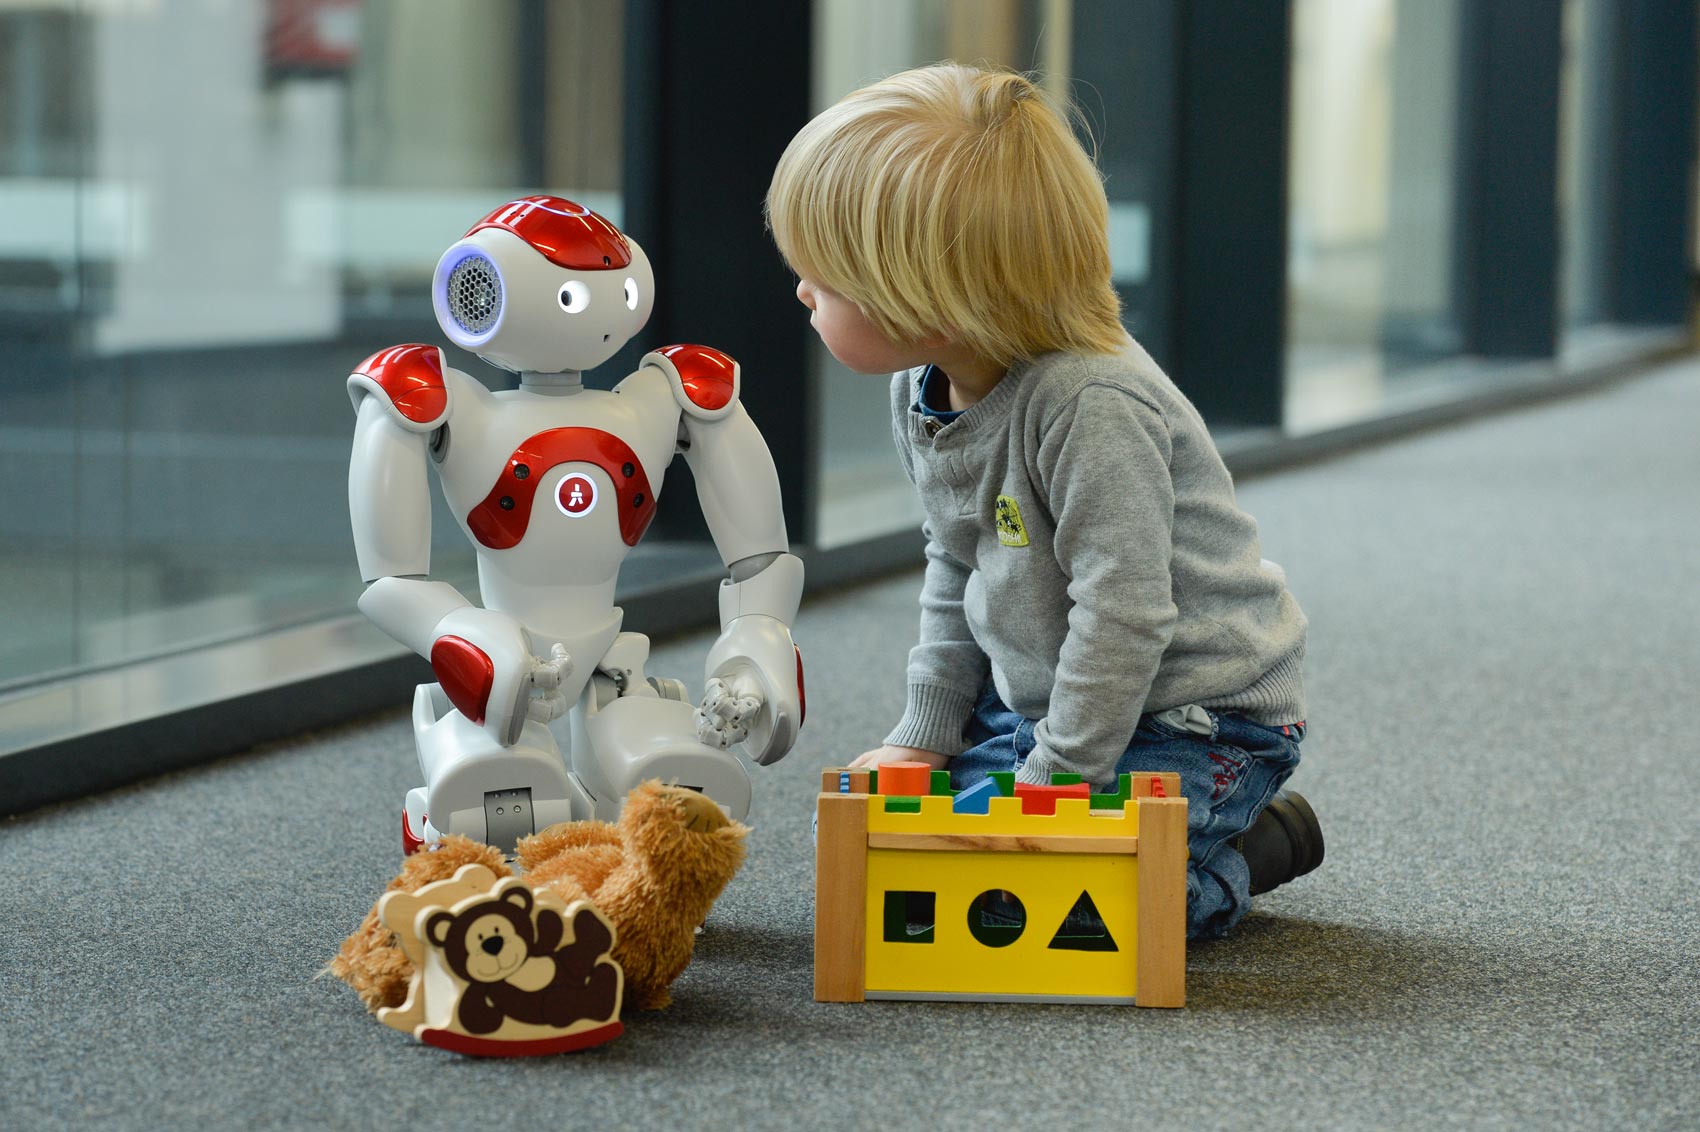 Kind und Roboter spielen zusammen